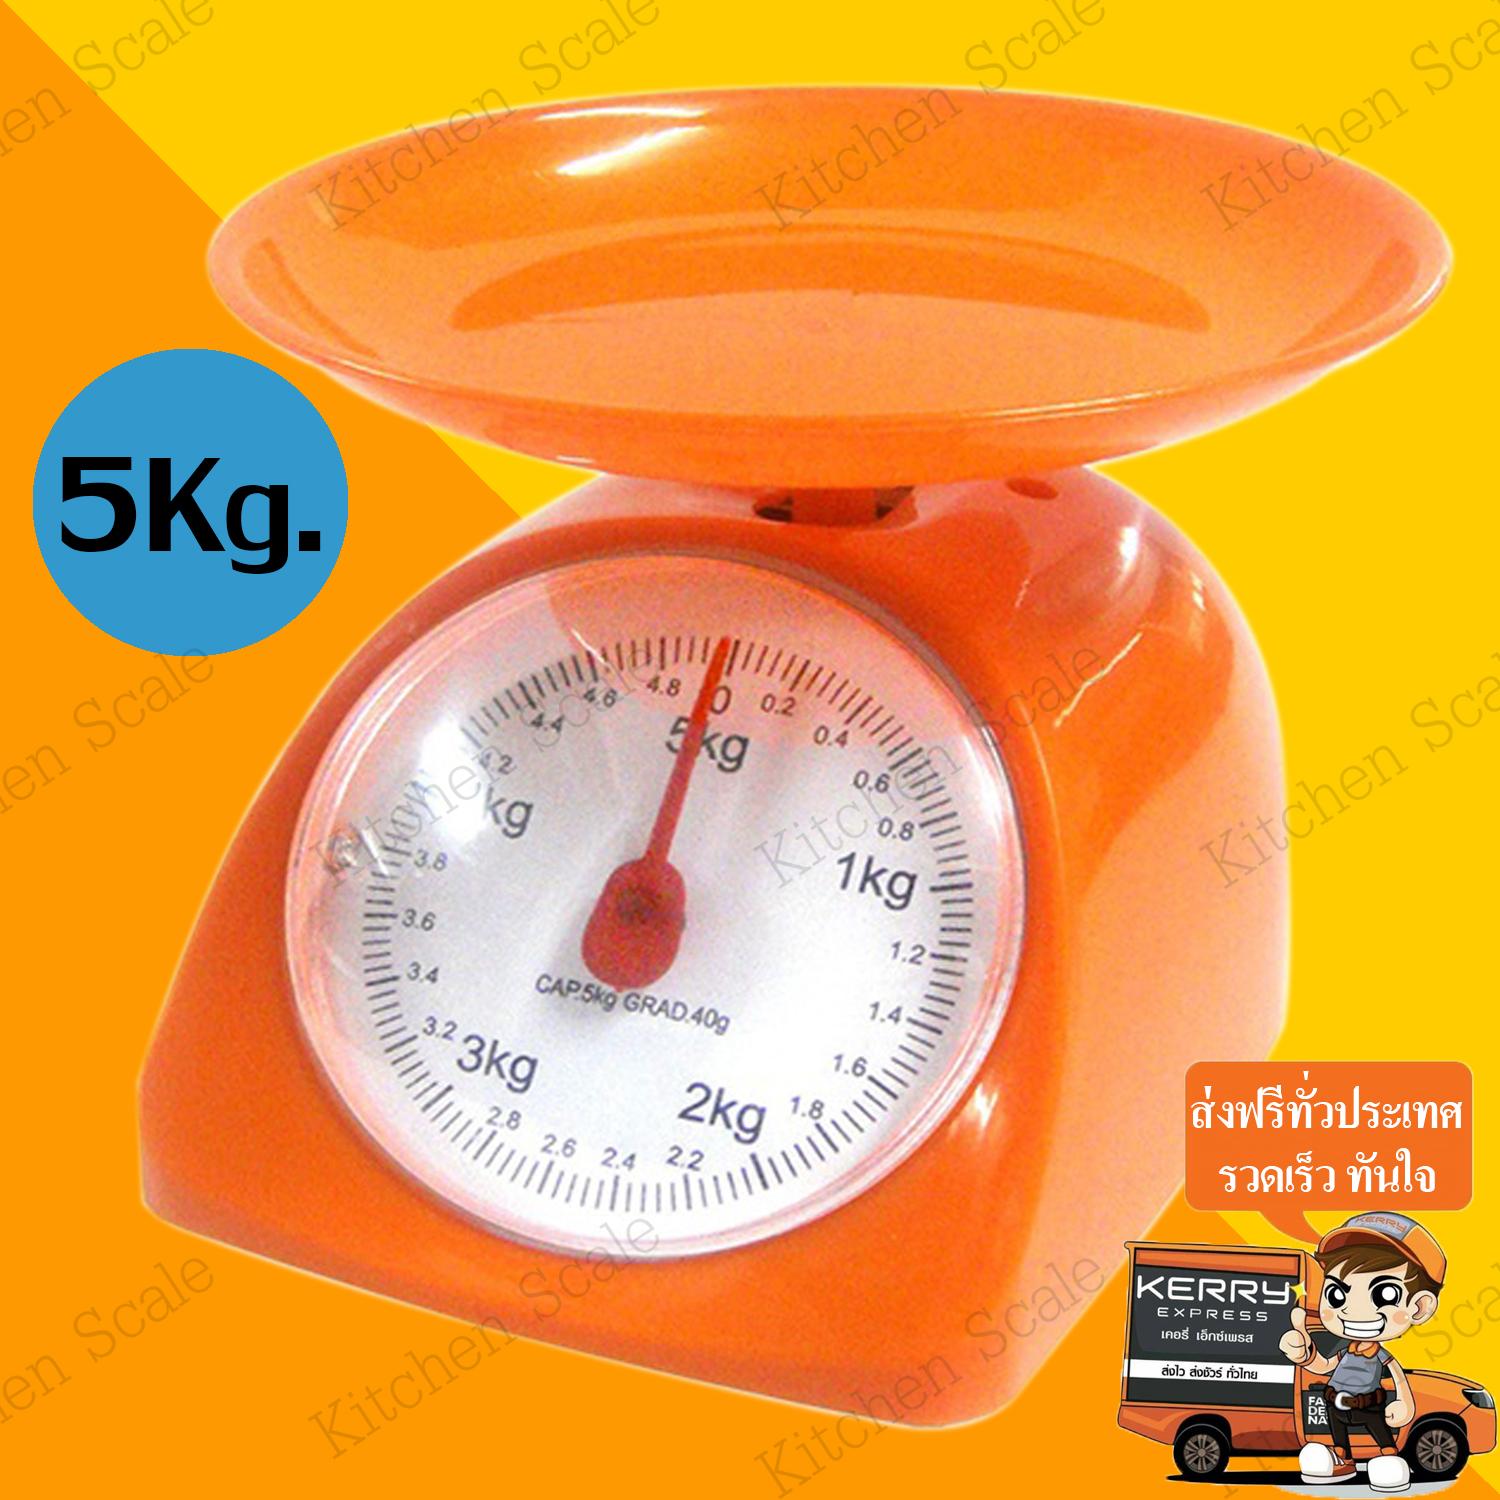 Kitchen Scale เครื่องชั่ง 5 กิโลกรัม สีส้ม ตาชั่งดิจิตอล เครื่องชั่งน้ำหนัก เครื่องชั่งในครัว เครื่องชั่งน้ำหนักดิจิตอล เครื่องชั่ง ที่ชั่งน้ำหนัก ที่ชั่ง Digital scales Electronic Kitchen Scale Max 5 Kg new step asia